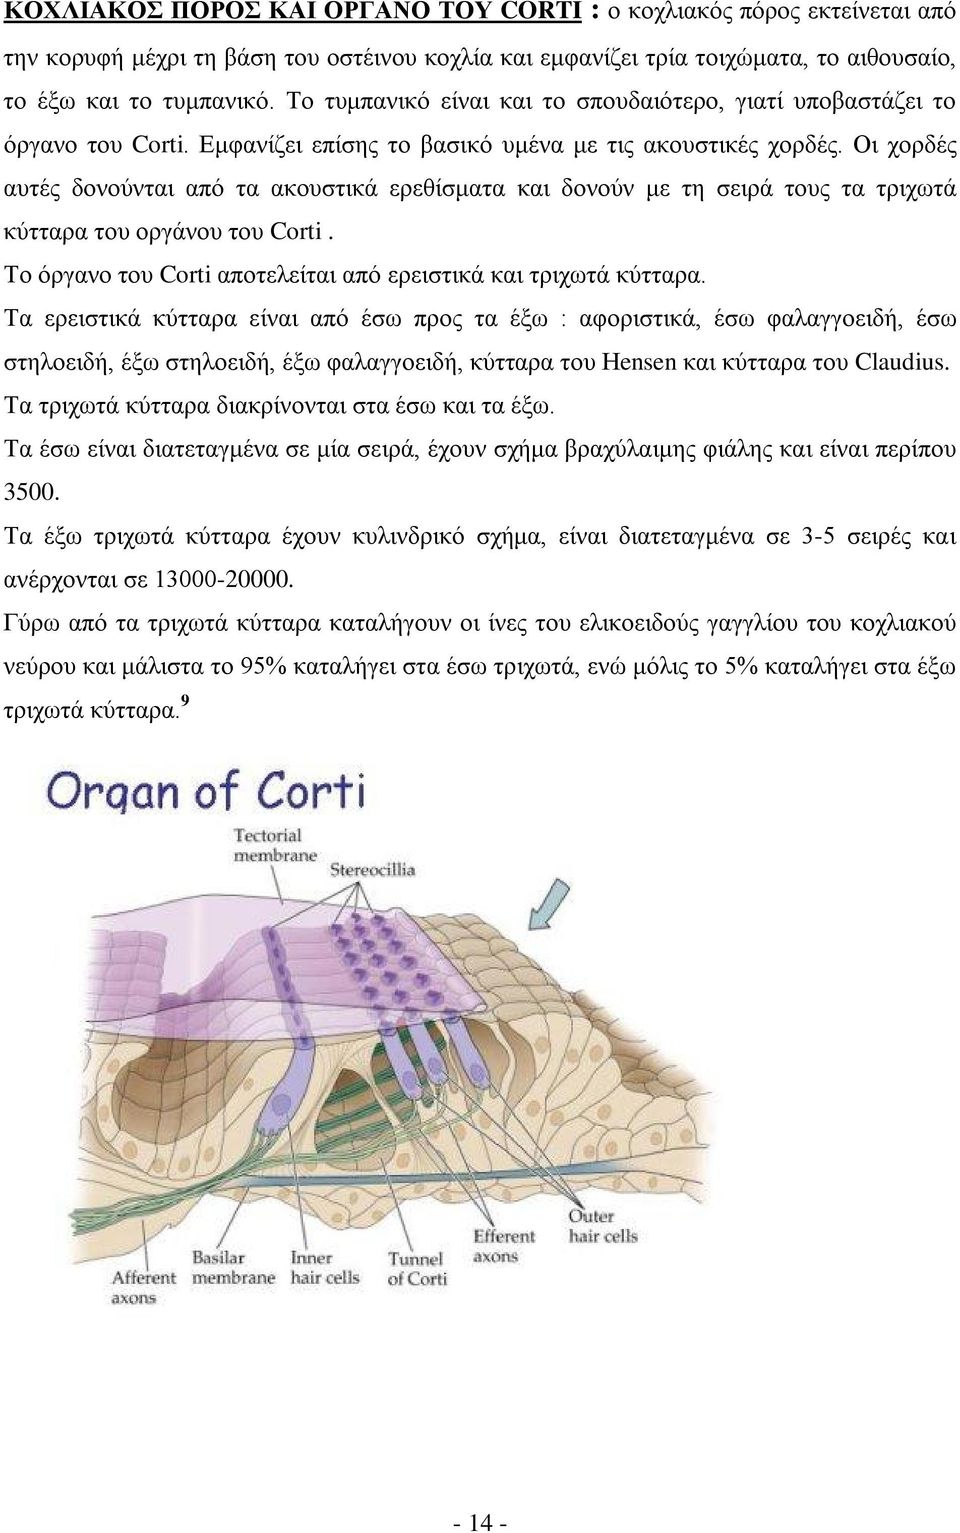 Οι χορδές αυτές δονούνται από τα ακουστικά ερεθίσματα και δονούν με τη σειρά τους τα τριχωτά κύτταρα του οργάνου του Corti. Το όργανο του Corti αποτελείται από ερειστικά και τριχωτά κύτταρα.